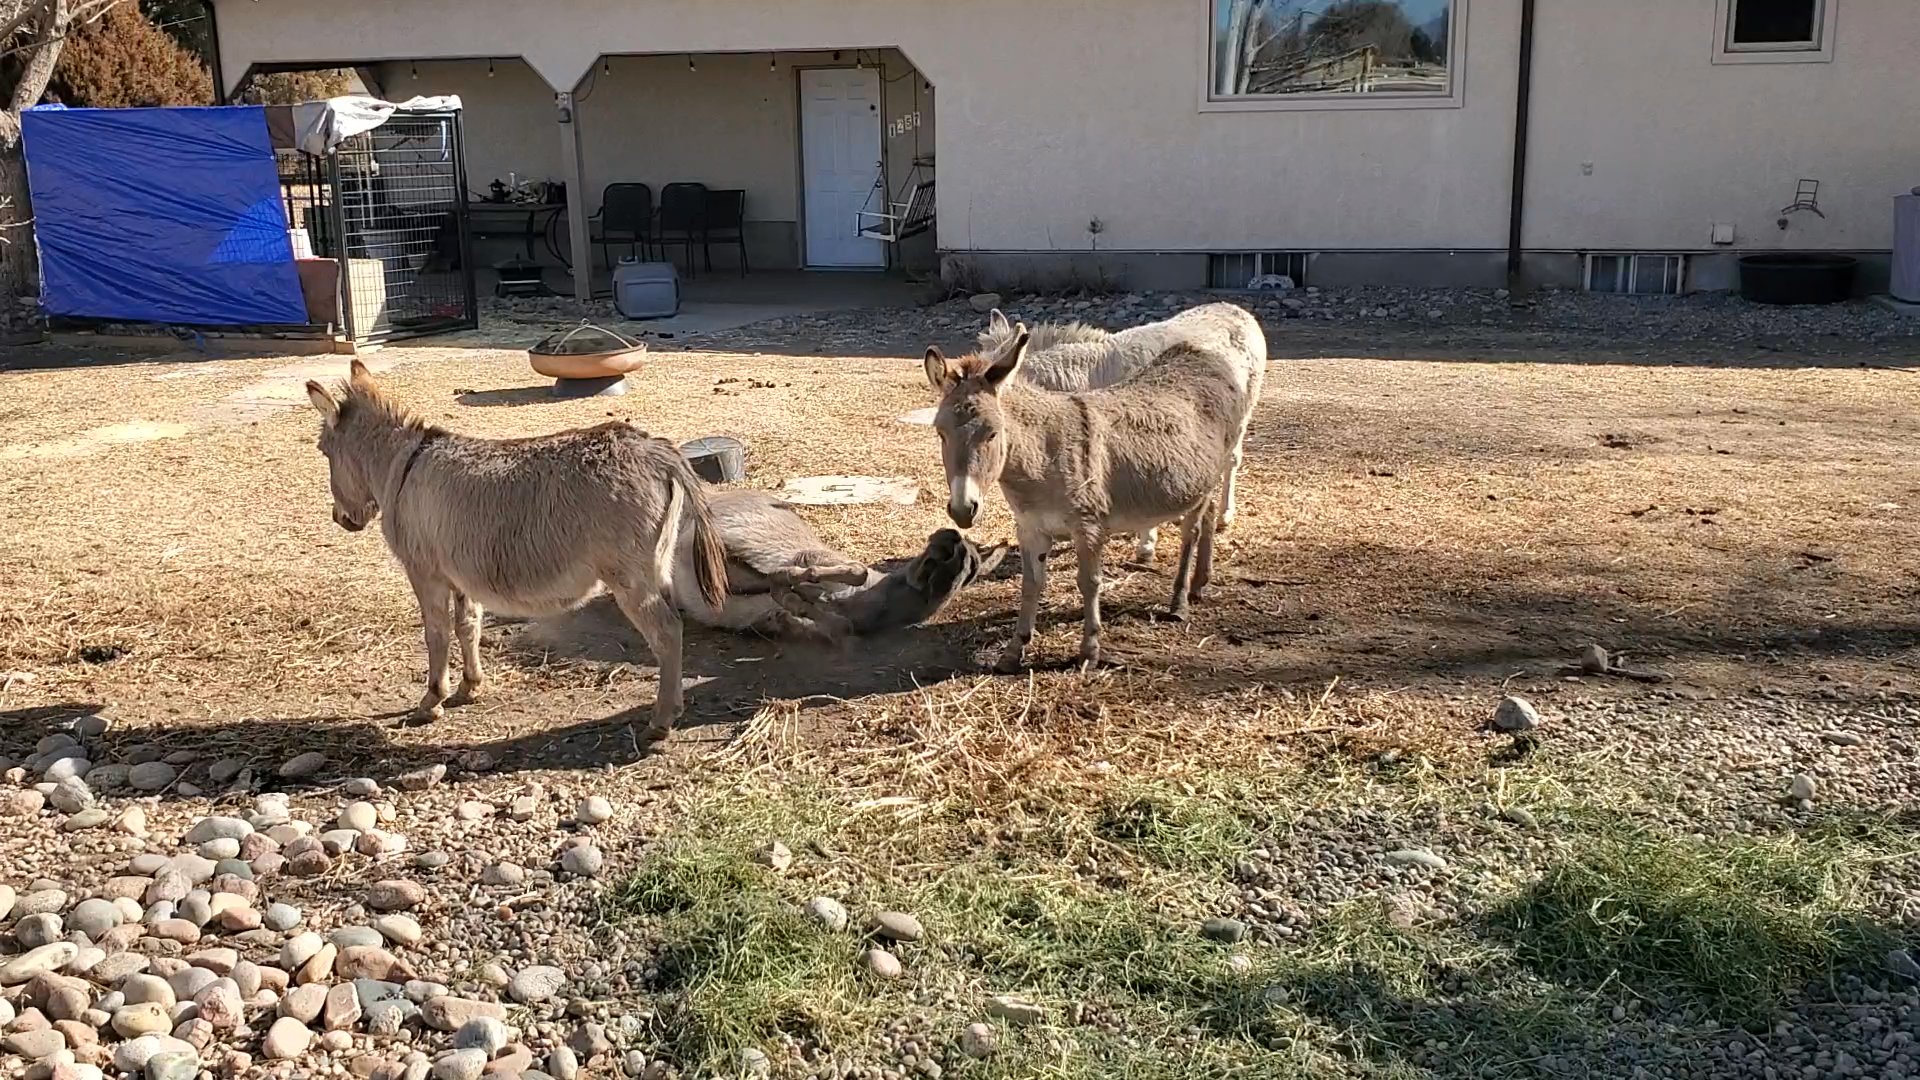 miniture burros in Pueblo, Colorado